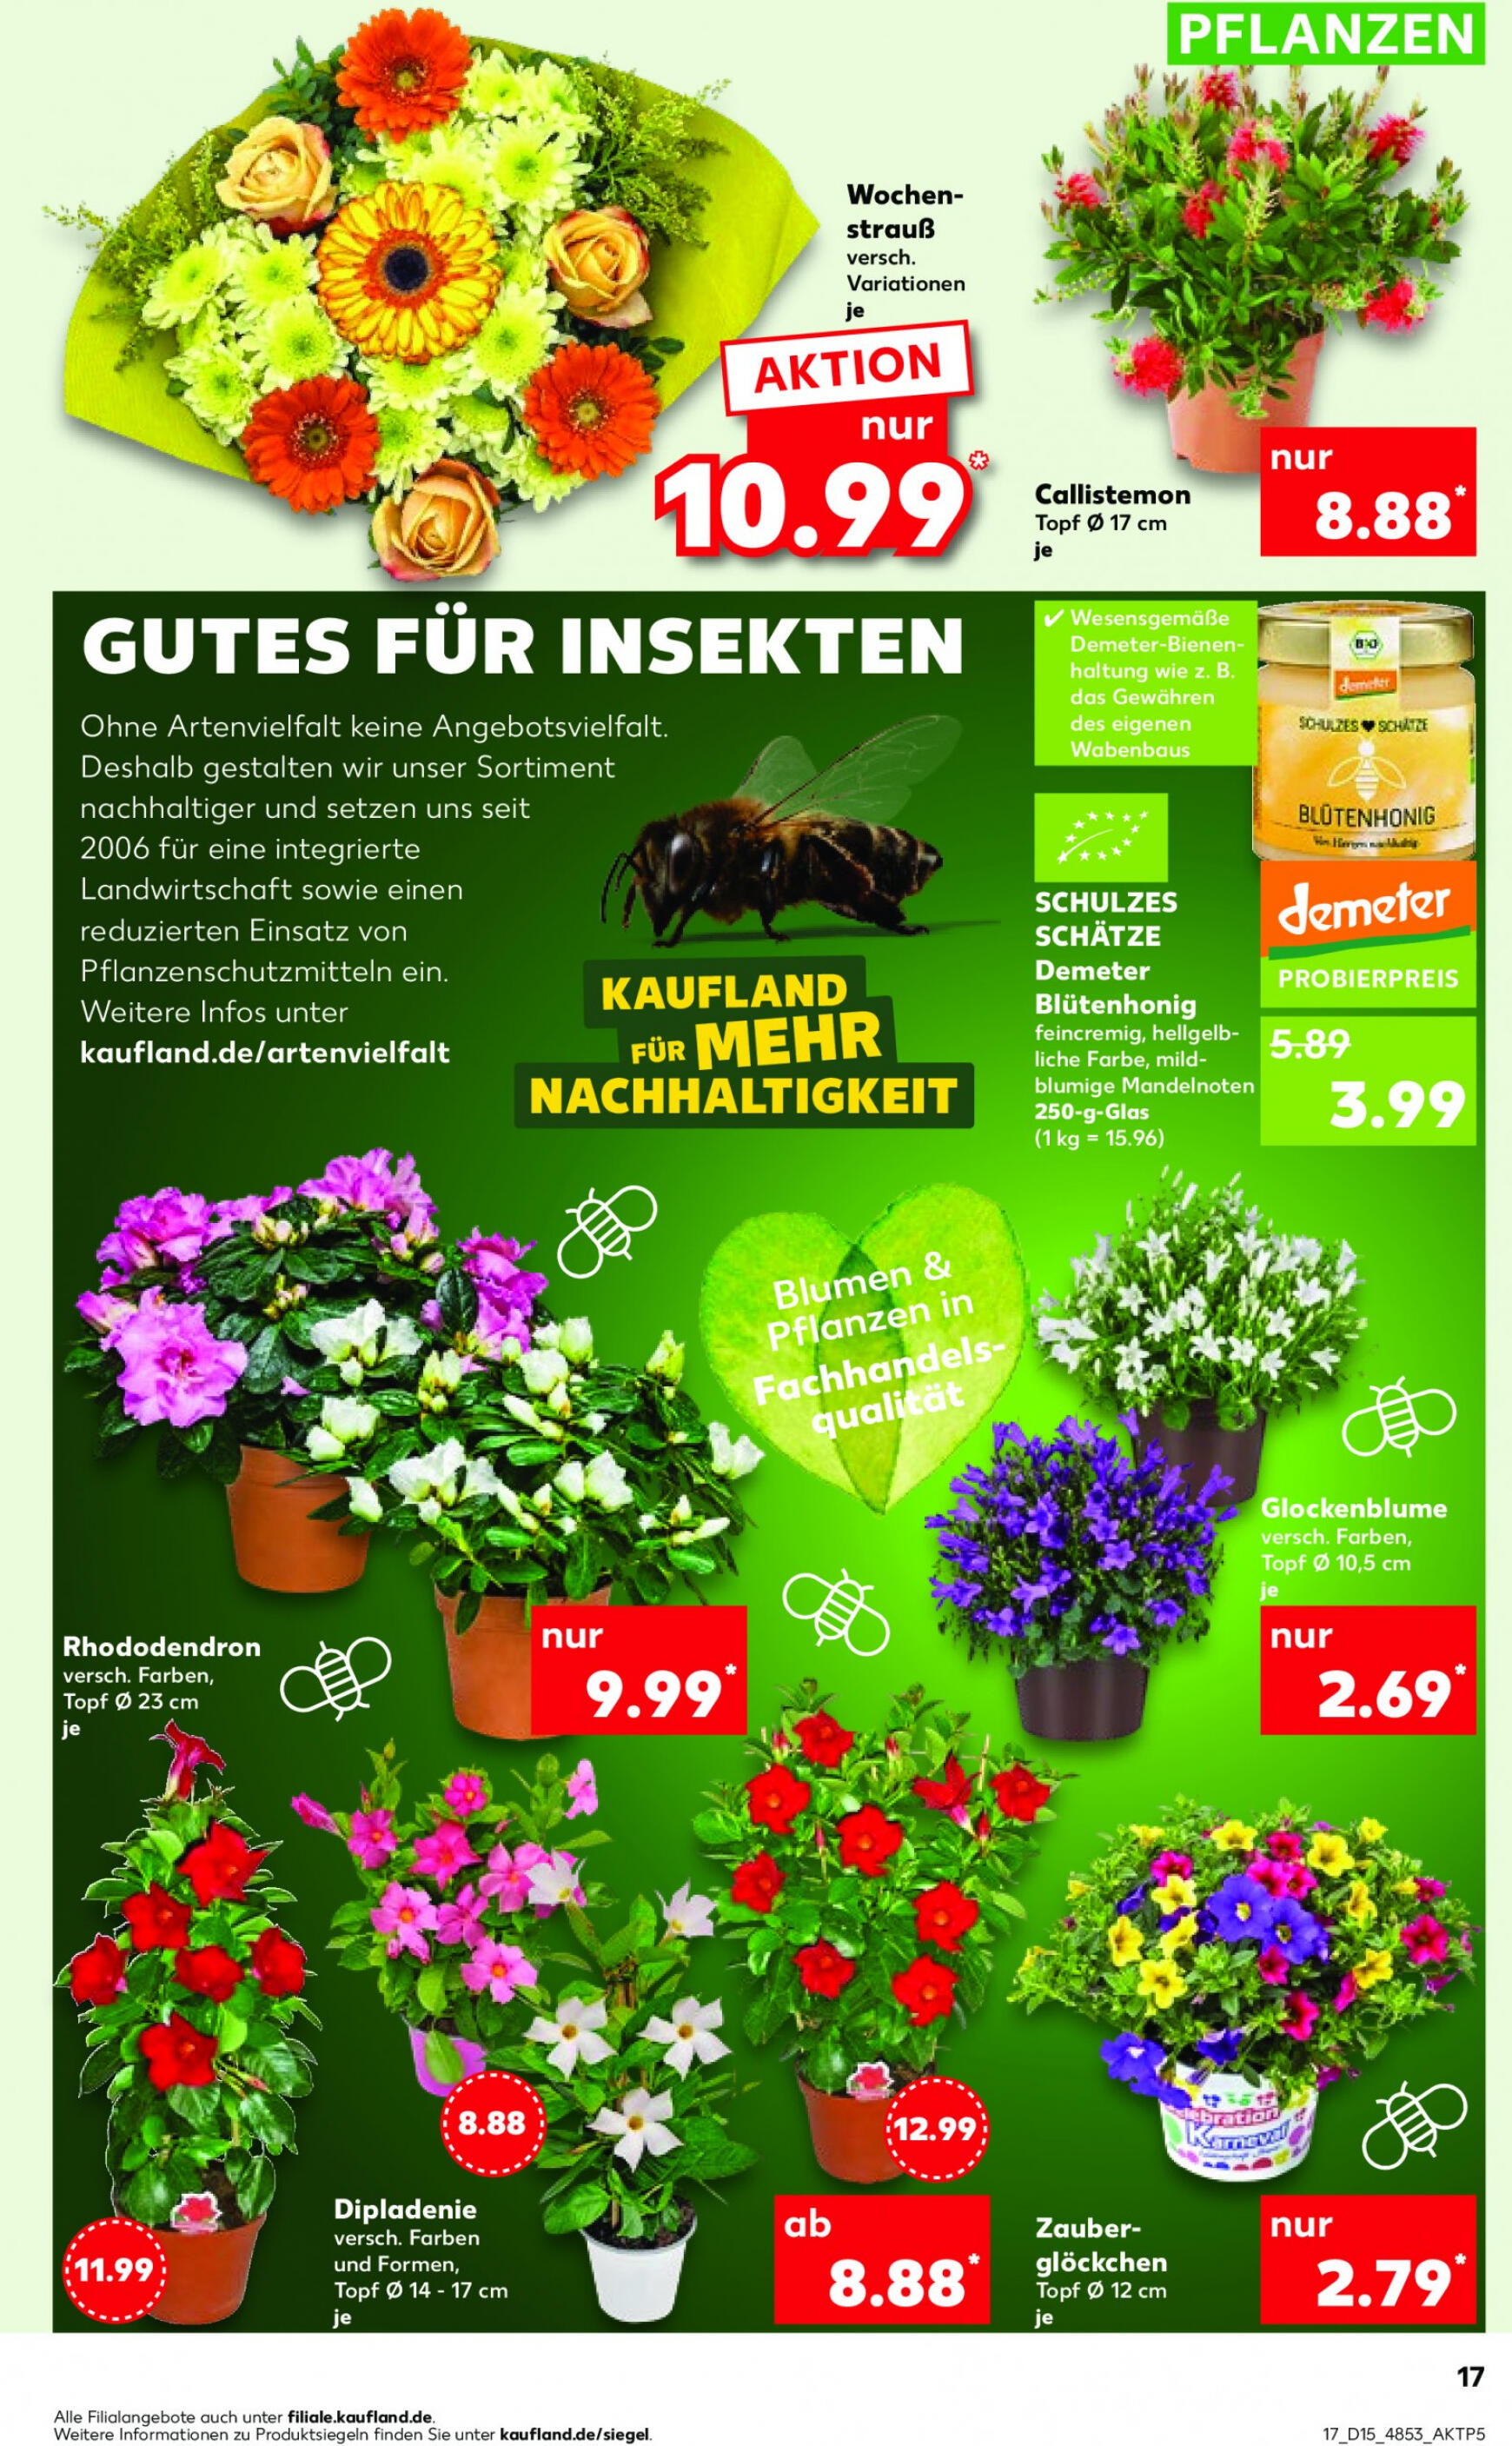 kaufland - Flyer Kaufland aktuell 11.04. - 17.04. - page: 17